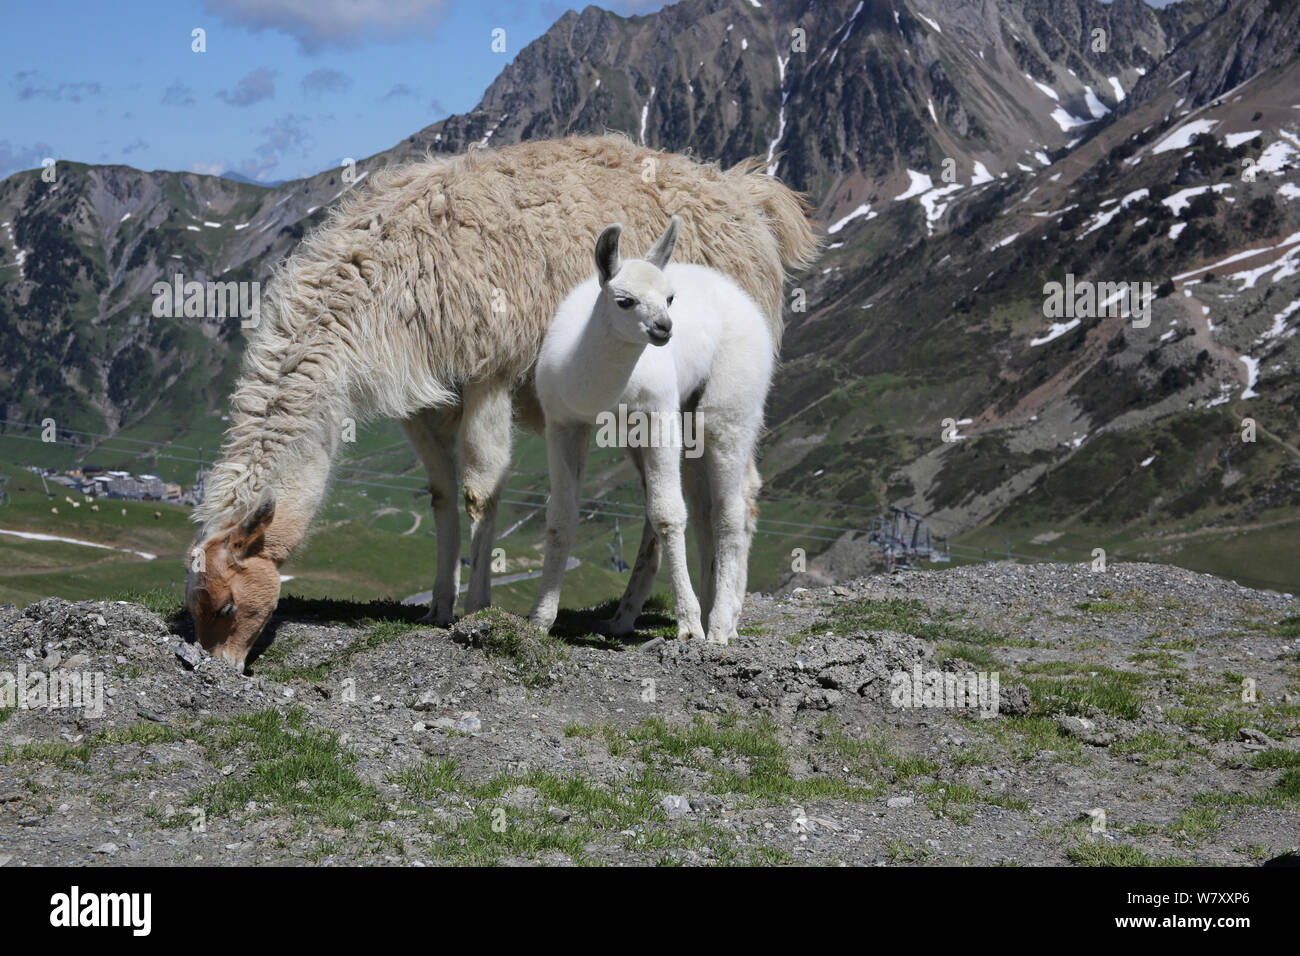 Lama femelle (Lama glama) avec les jeunes. Pyrénées françaises, France, juillet. Banque D'Images